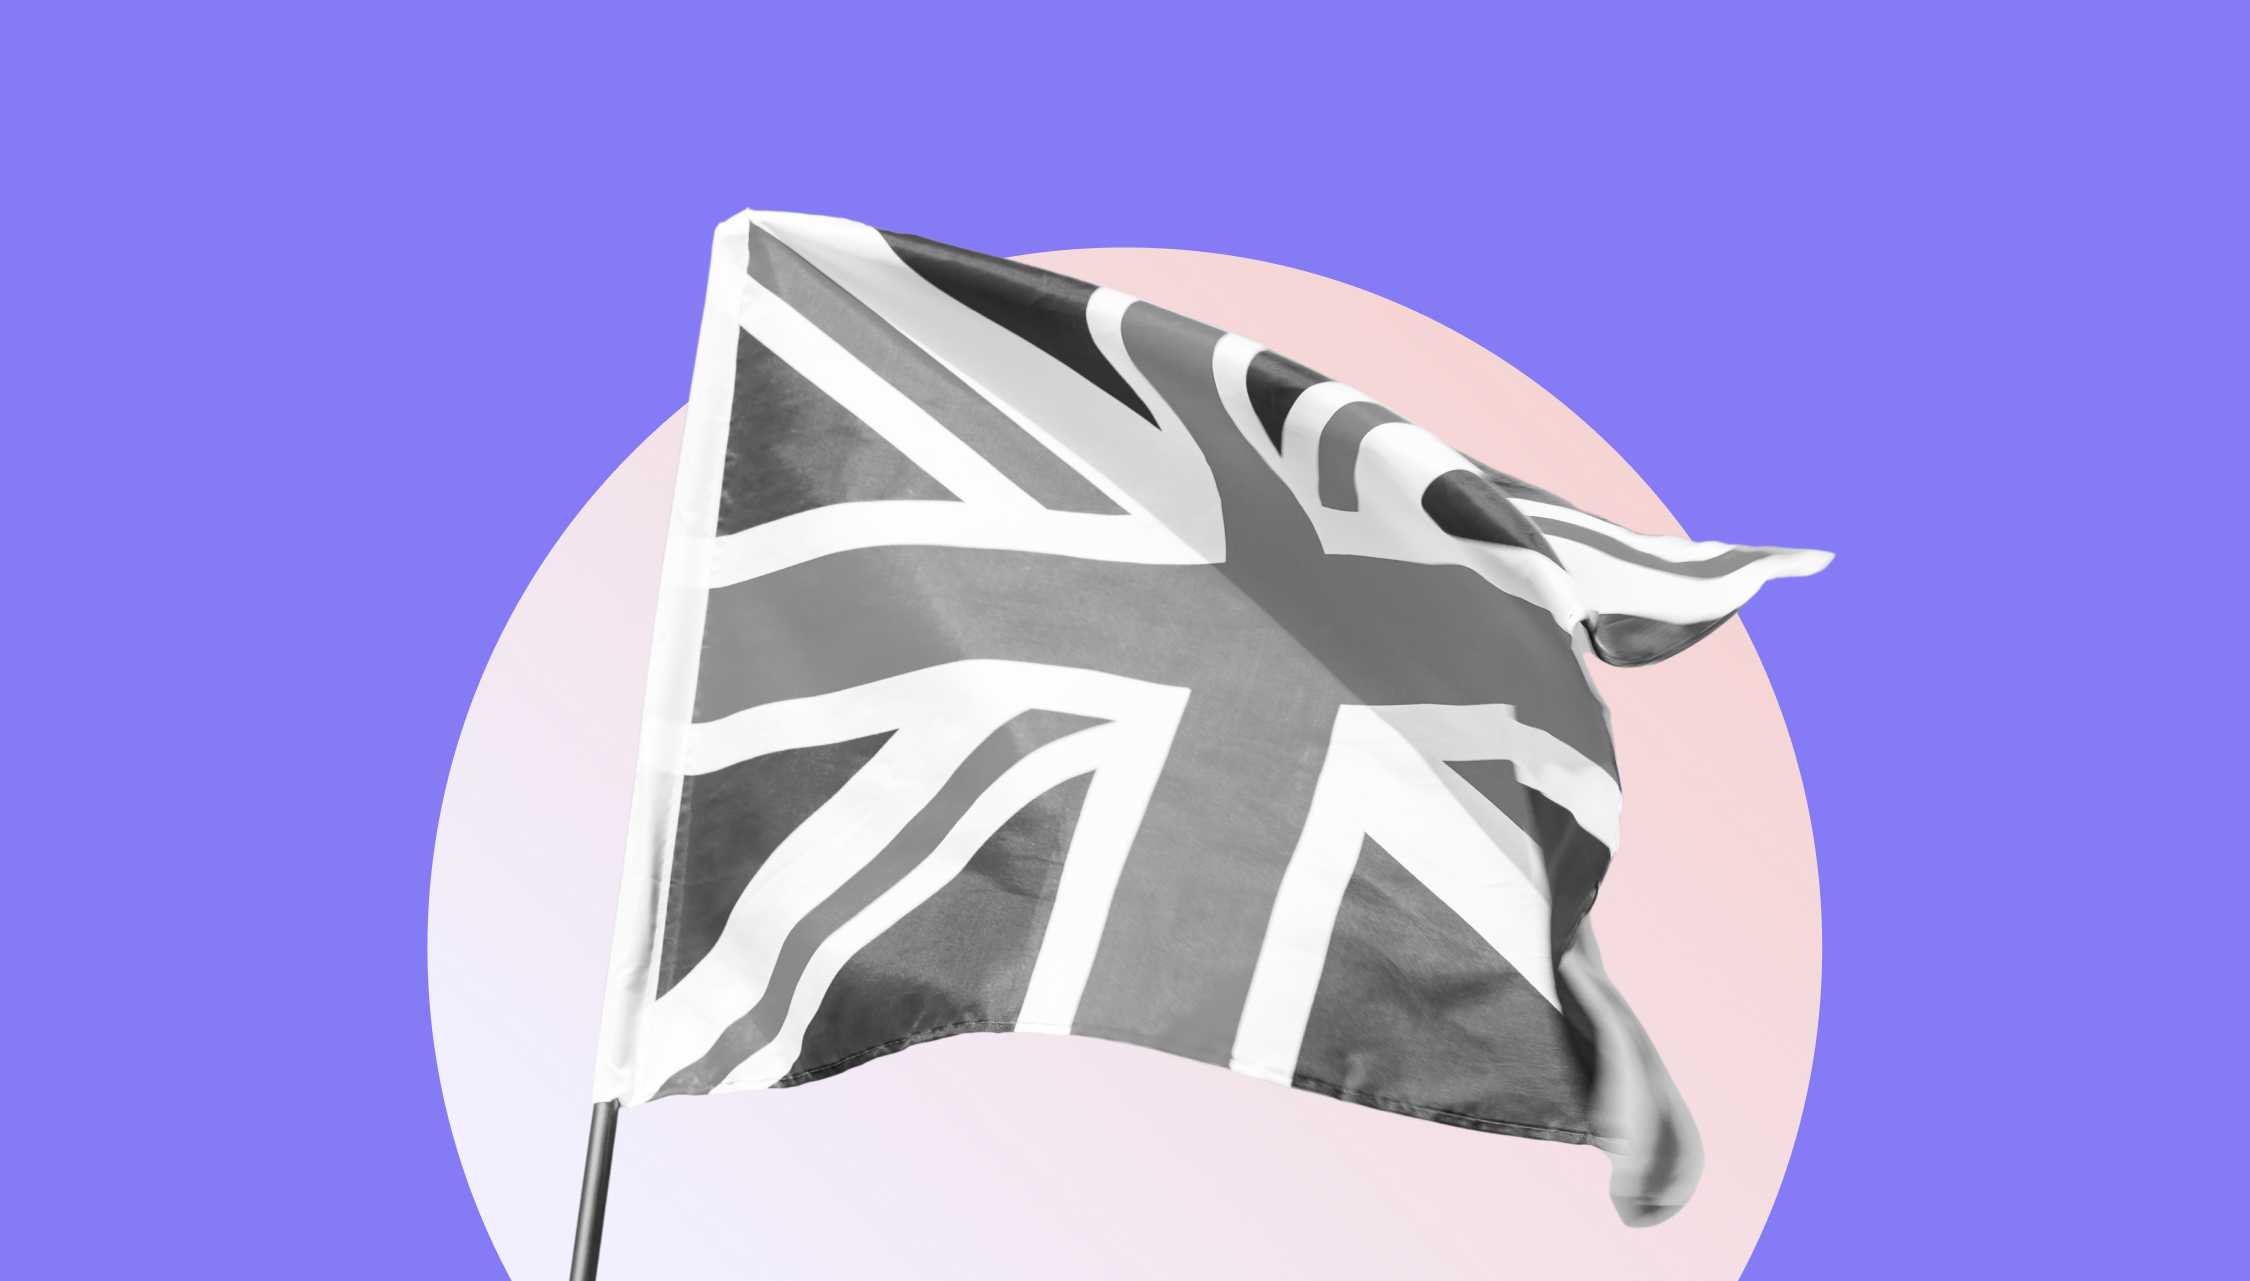 UK Flagge auf einem Kreis mit lila Hintergrund